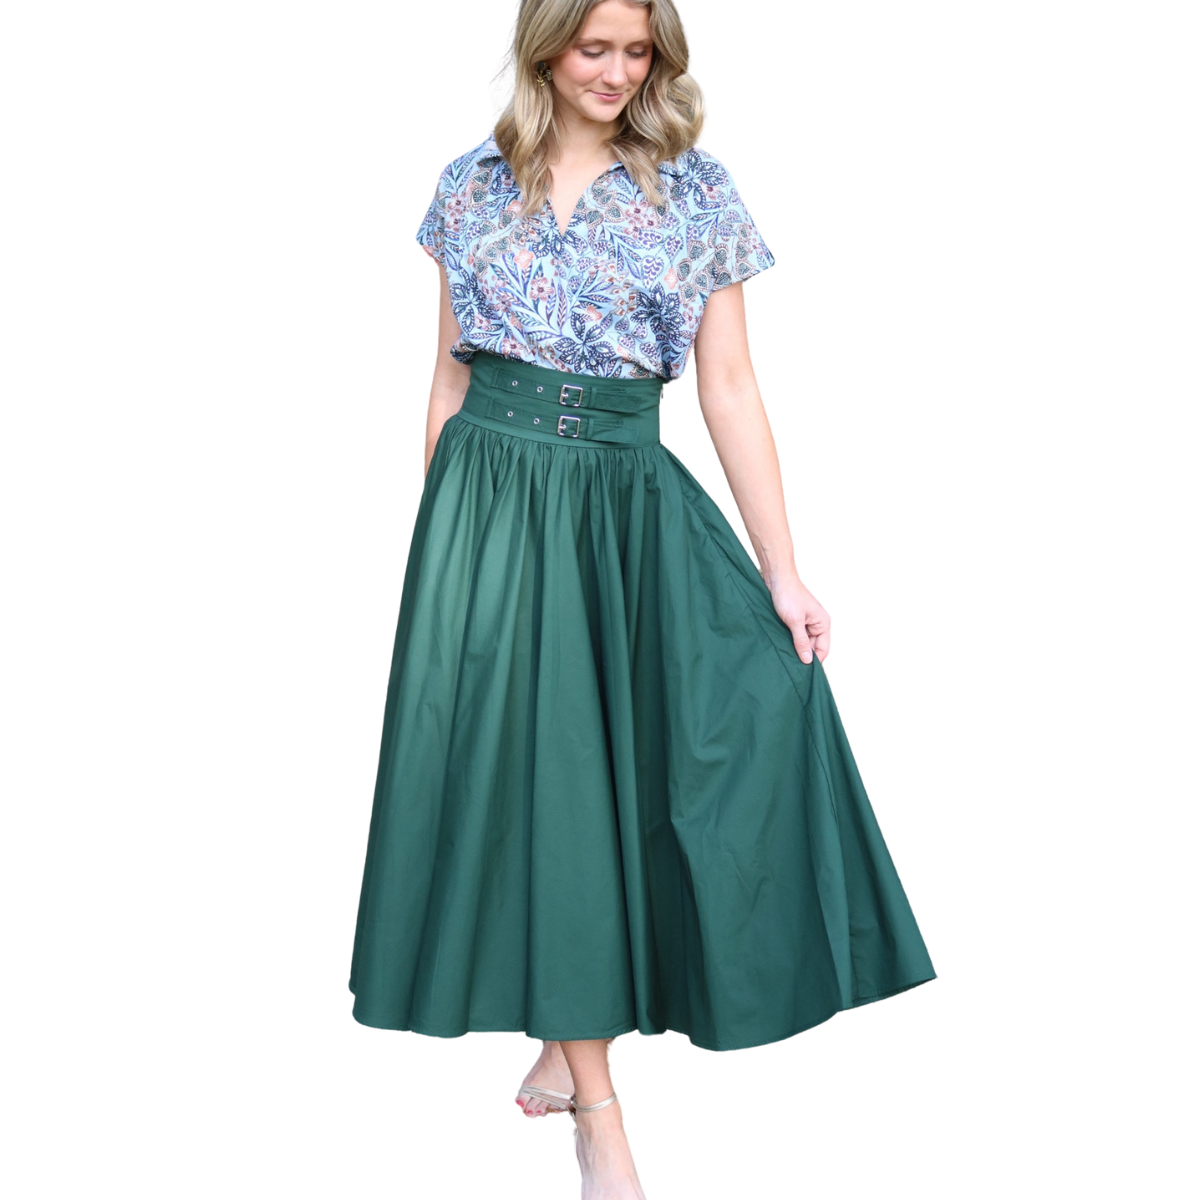 Meimeij Skirt - Evergreen